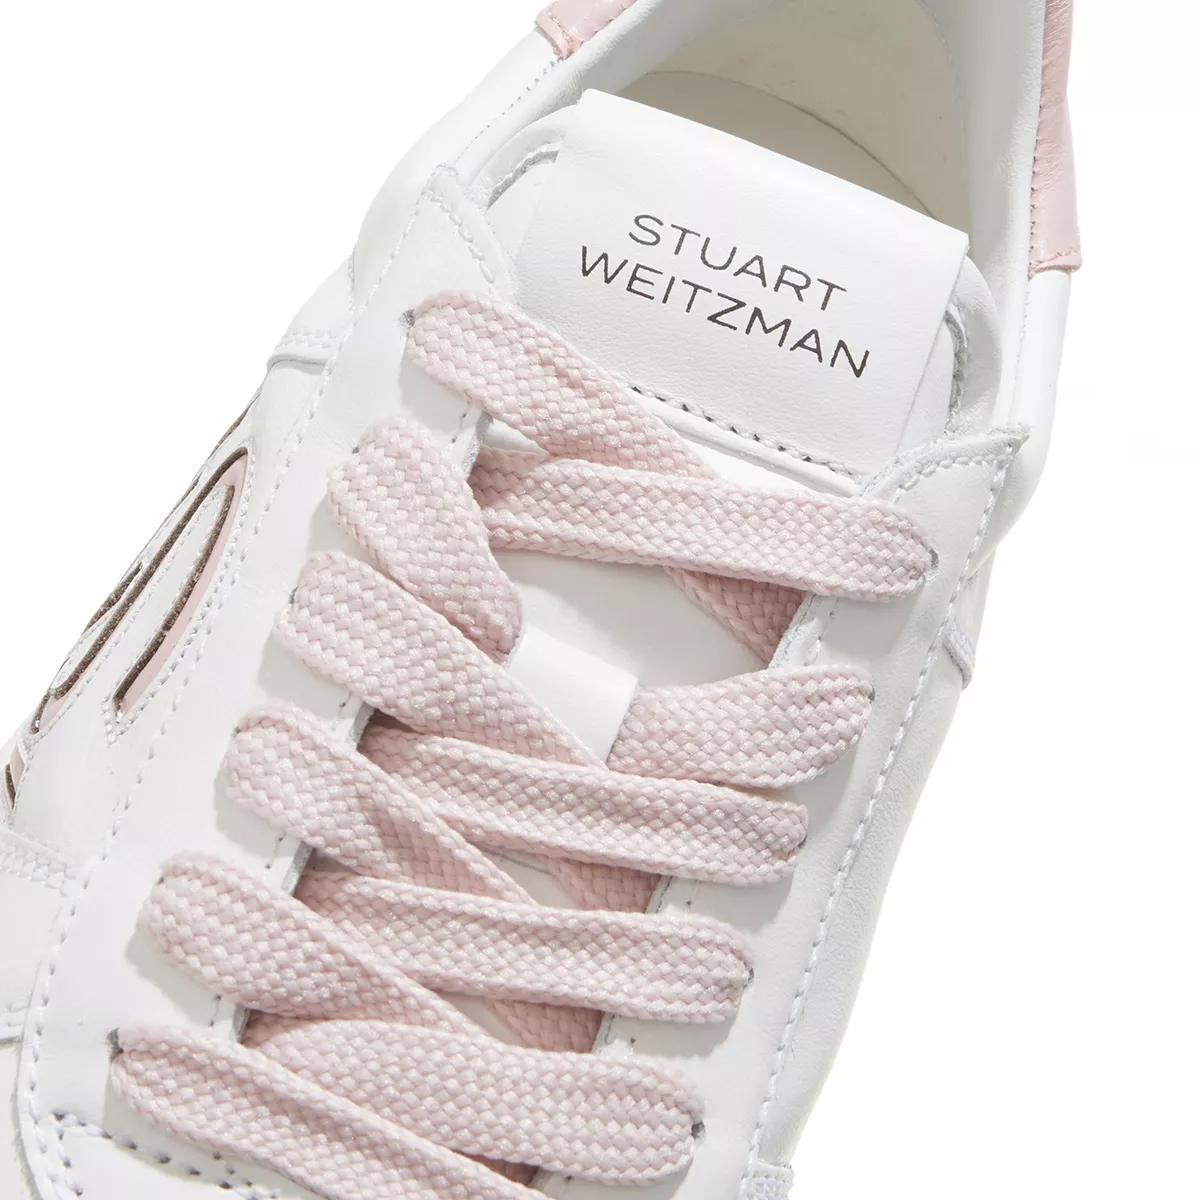 Stuart Weitzman Sneakers - SW COURTSIDE LOGO SNEAKER - Gr. 39 (EU) - in Weiß - für Damen von Stuart Weitzman